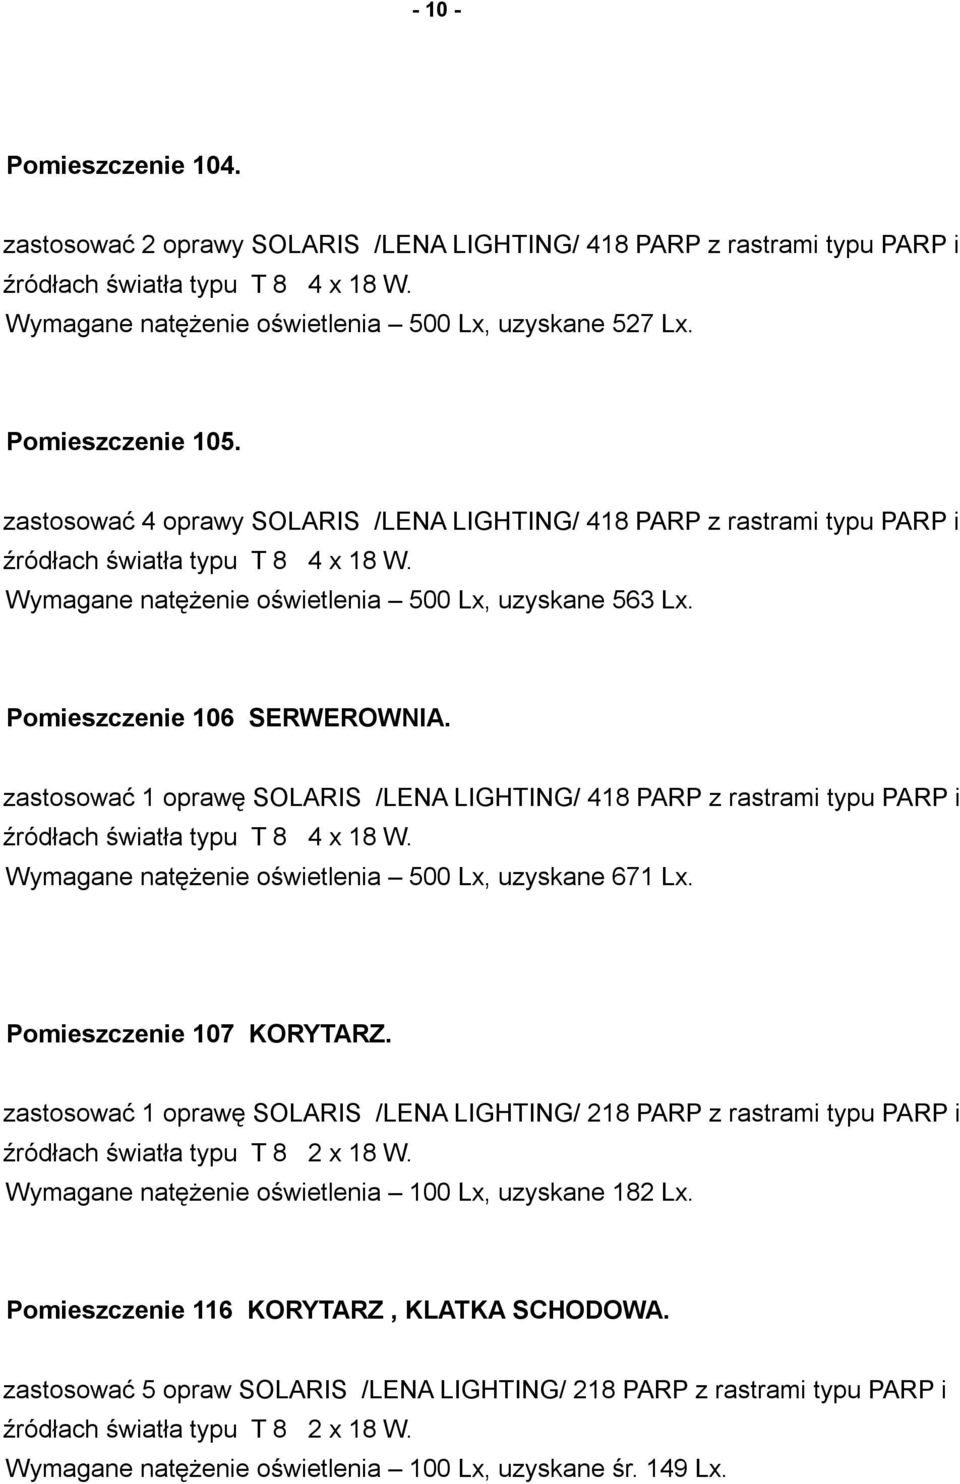 zastosować 1 oprawę SOLARIS /LENA LIGHTING/ 418 PARP z rastrami typu PARP i Wymagane natężenie oświetlenia 500 Lx, uzyskane 671 Lx. Pomieszczenie 107 KORYTARZ.